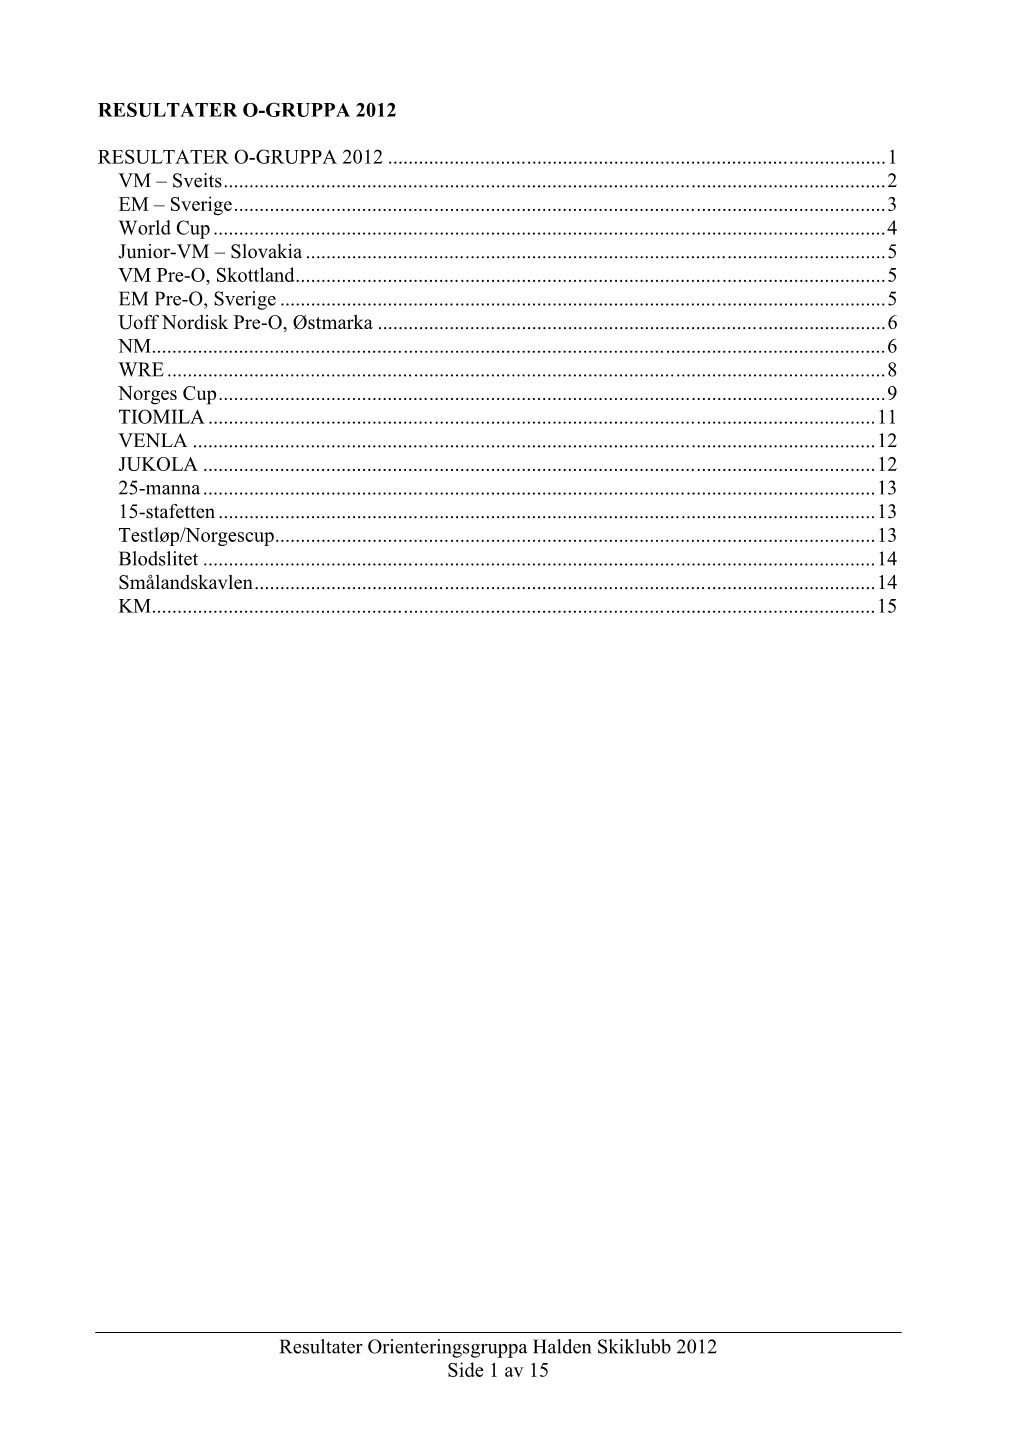 Resultater Orienteringsgruppa Halden Skiklubb 2012 Side 1 Av 15